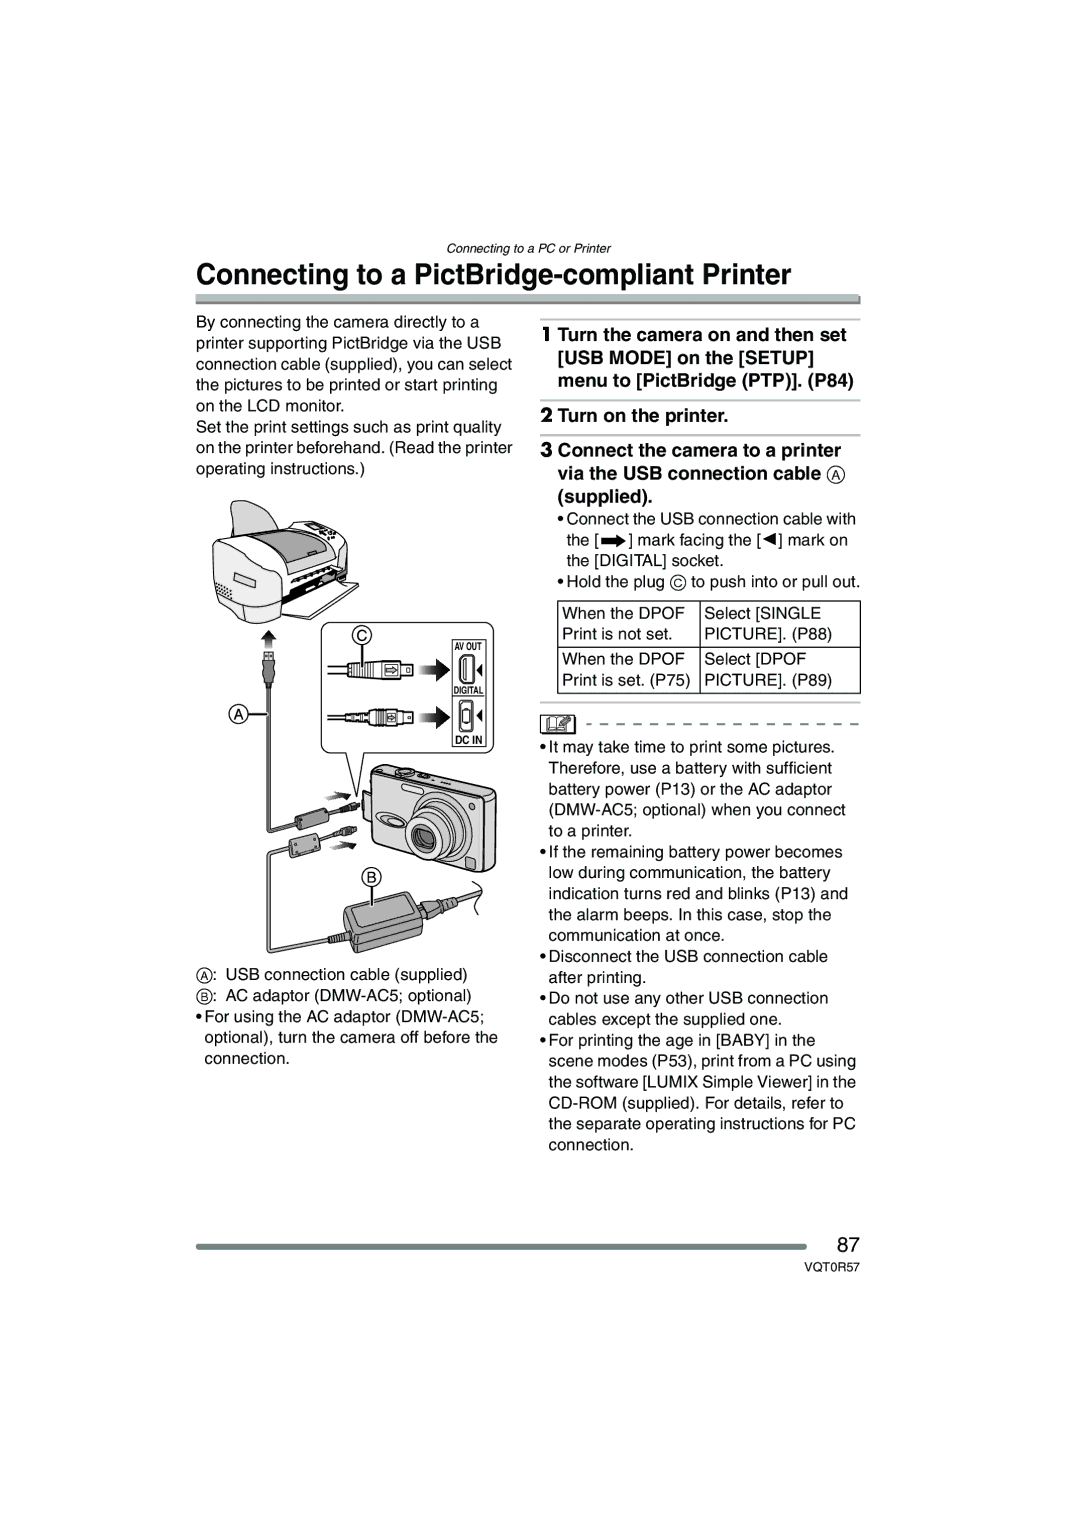 Panasonic DMC-FX8GN Connecting to a PictBridge-compliant Printer, When the Dpof Select Dpof Print is set. P75 